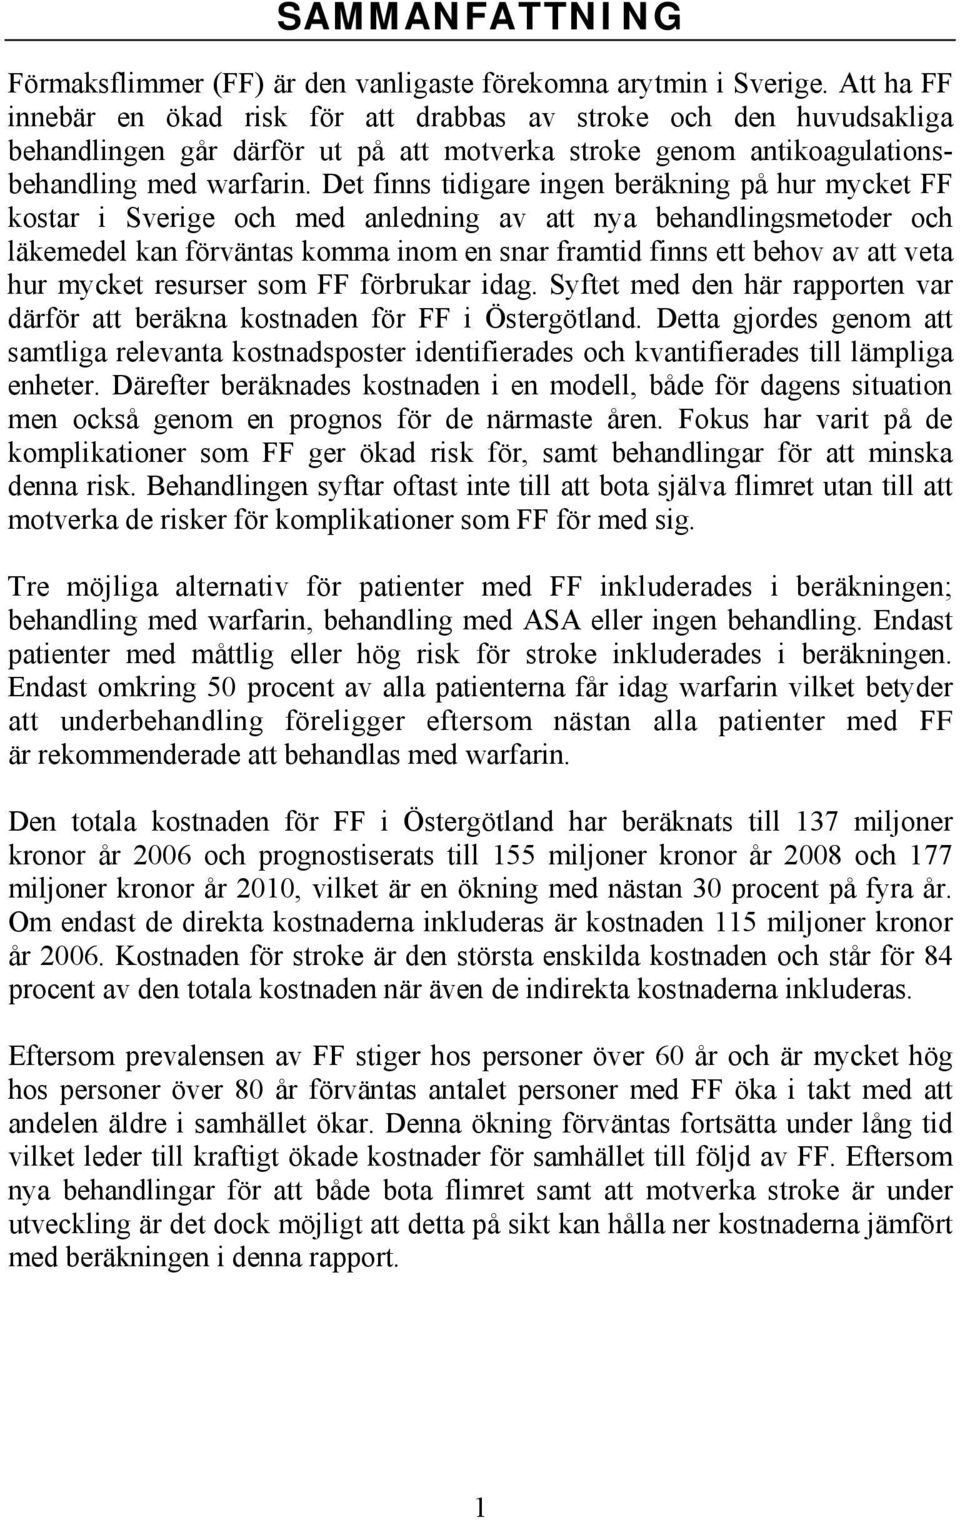 Det finns tidigare ingen beräkning på hur mycket FF kostar i Sverige och med anledning av att nya behandlingsmetoder och läkemedel kan förväntas komma inom en snar framtid finns ett behov av att veta